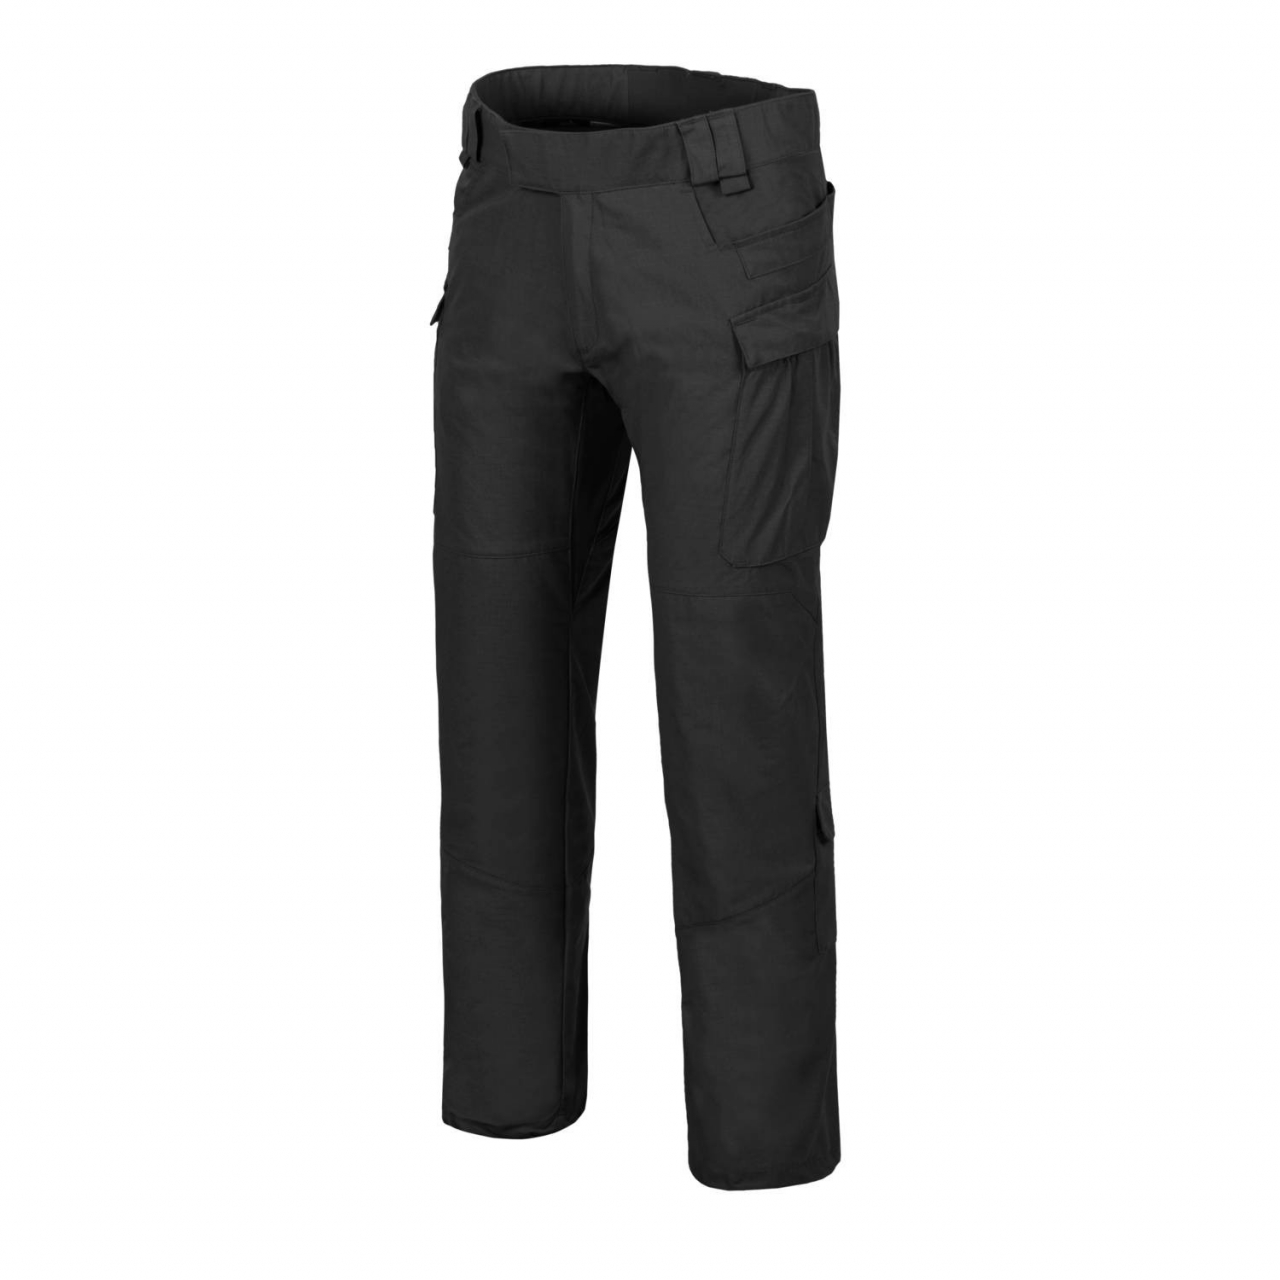 Kalhoty Helikon MBDU NyCo Ripstop - černé, XS Short